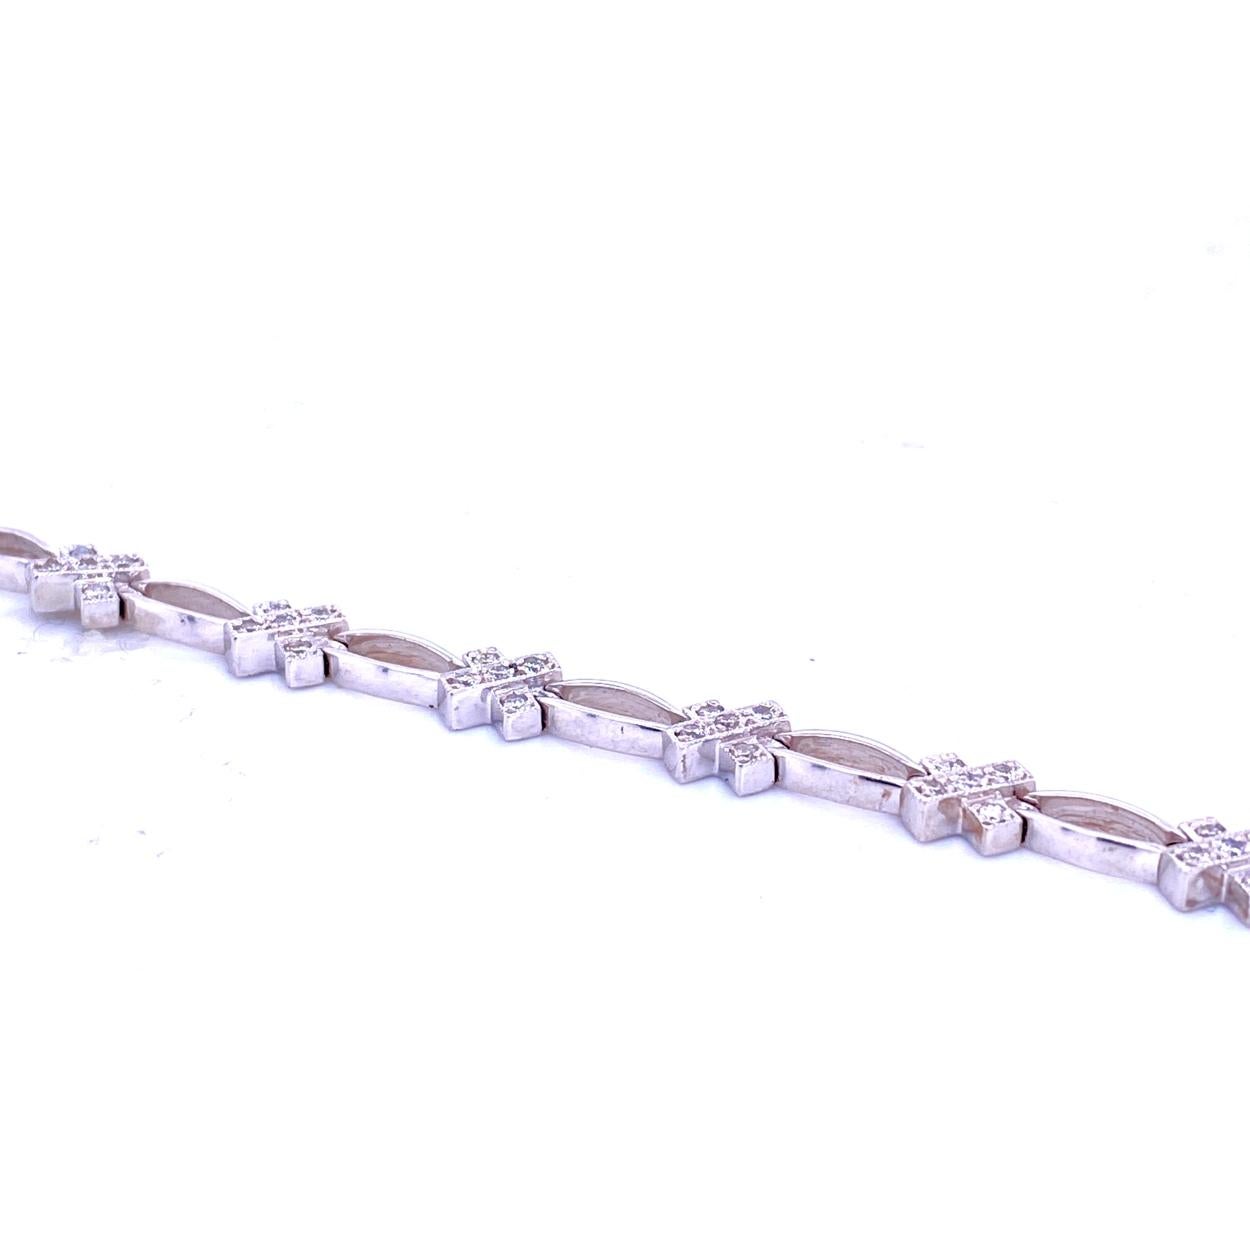 Dieses Diamantarmband besteht aus 14 Gliedern, die mit 70 runden Brillanten von 1,2 mm Durchmesser besetzt sind. Das Armband ist aus 14K Gold gefertigt.  Das Armband wird mit einem eingebauten Sicherheitsschloss geliefert.
Metall: 14K